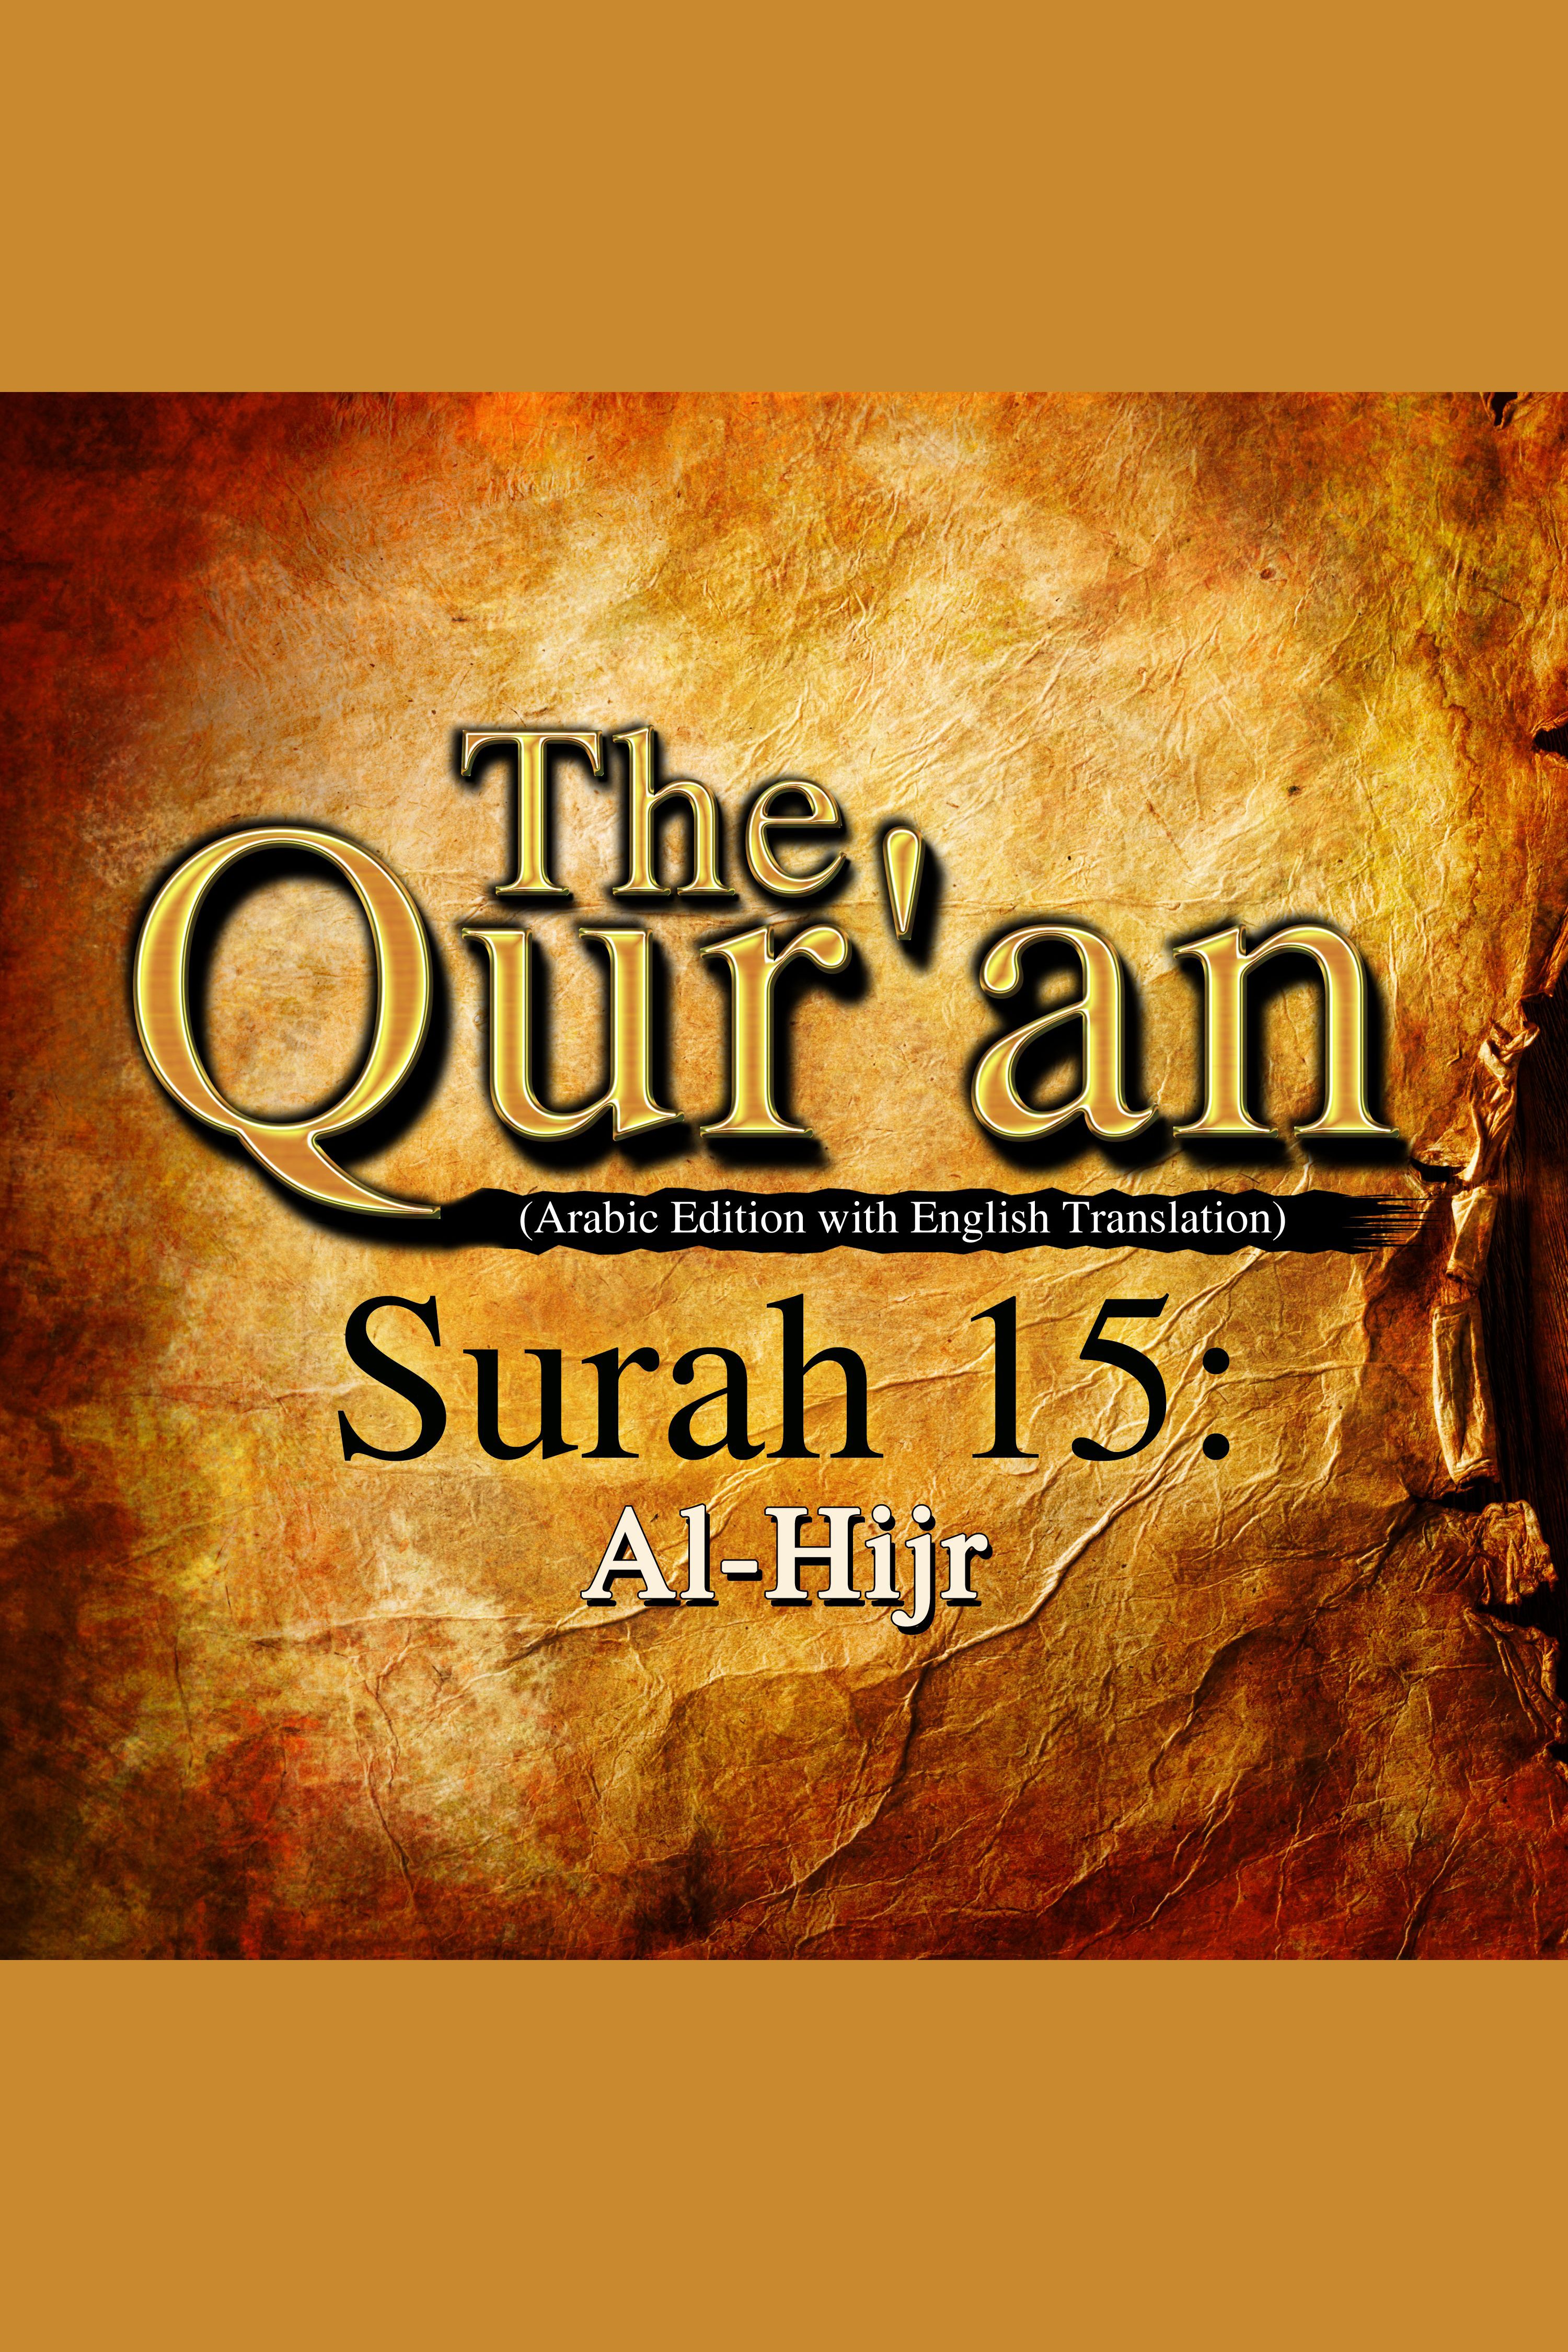 The Qur'an - Surah 15 - Al-Hijr cover image